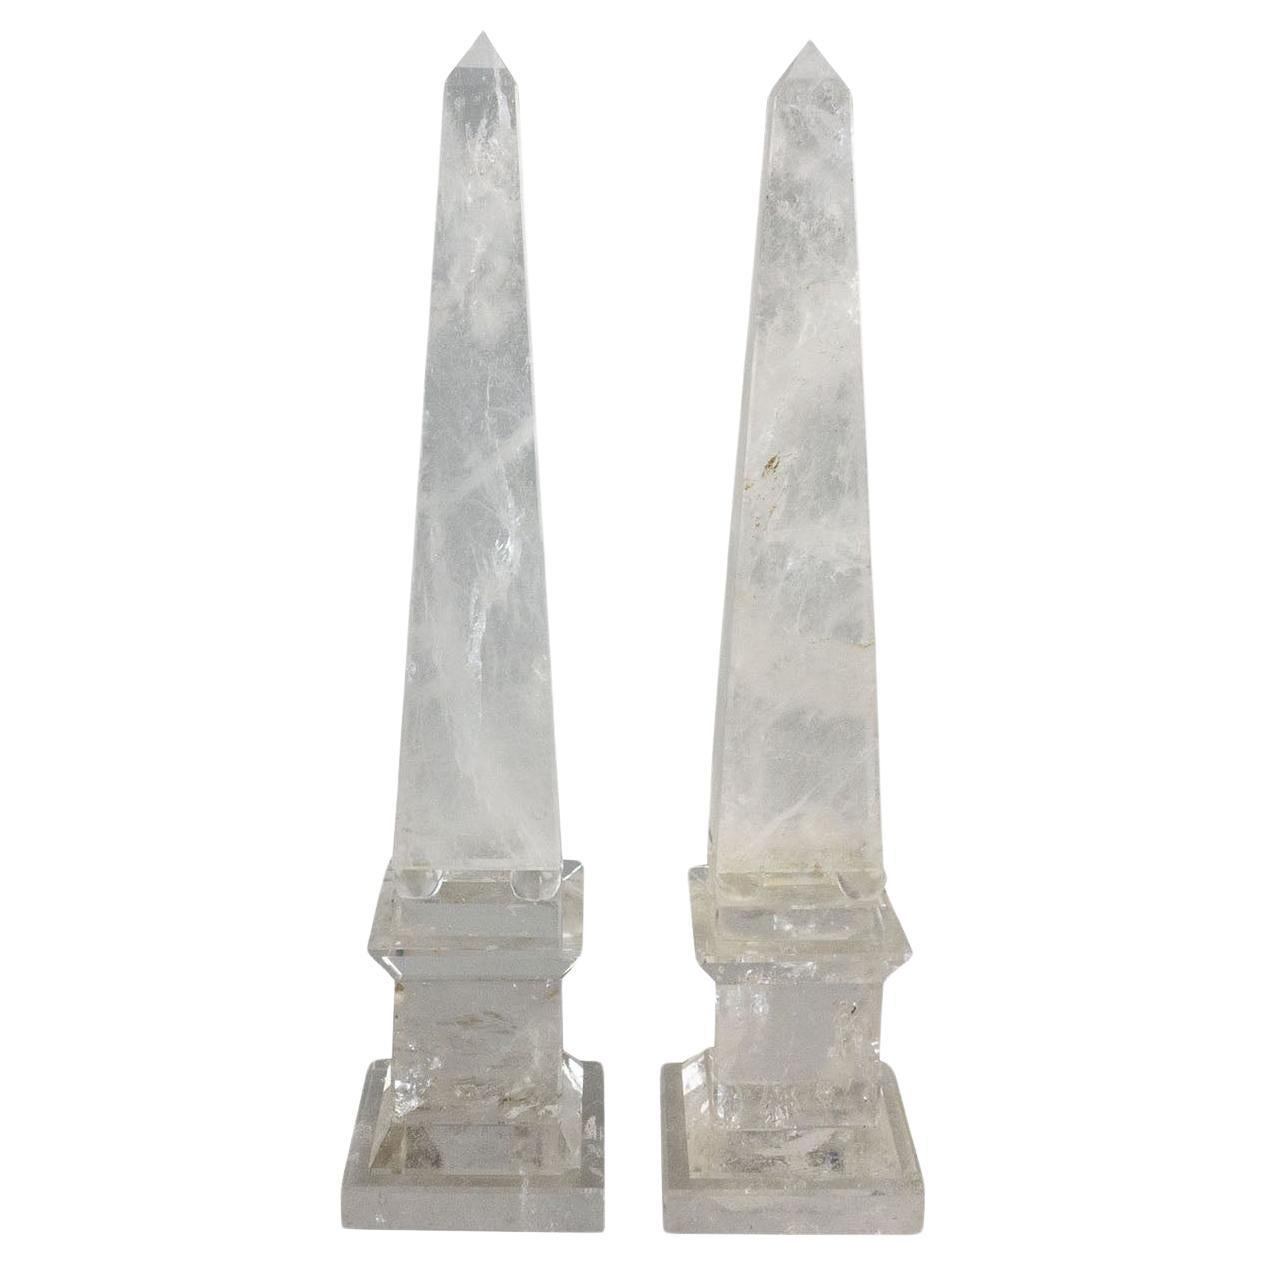 Pair of Hyaline Quartz Obelisks